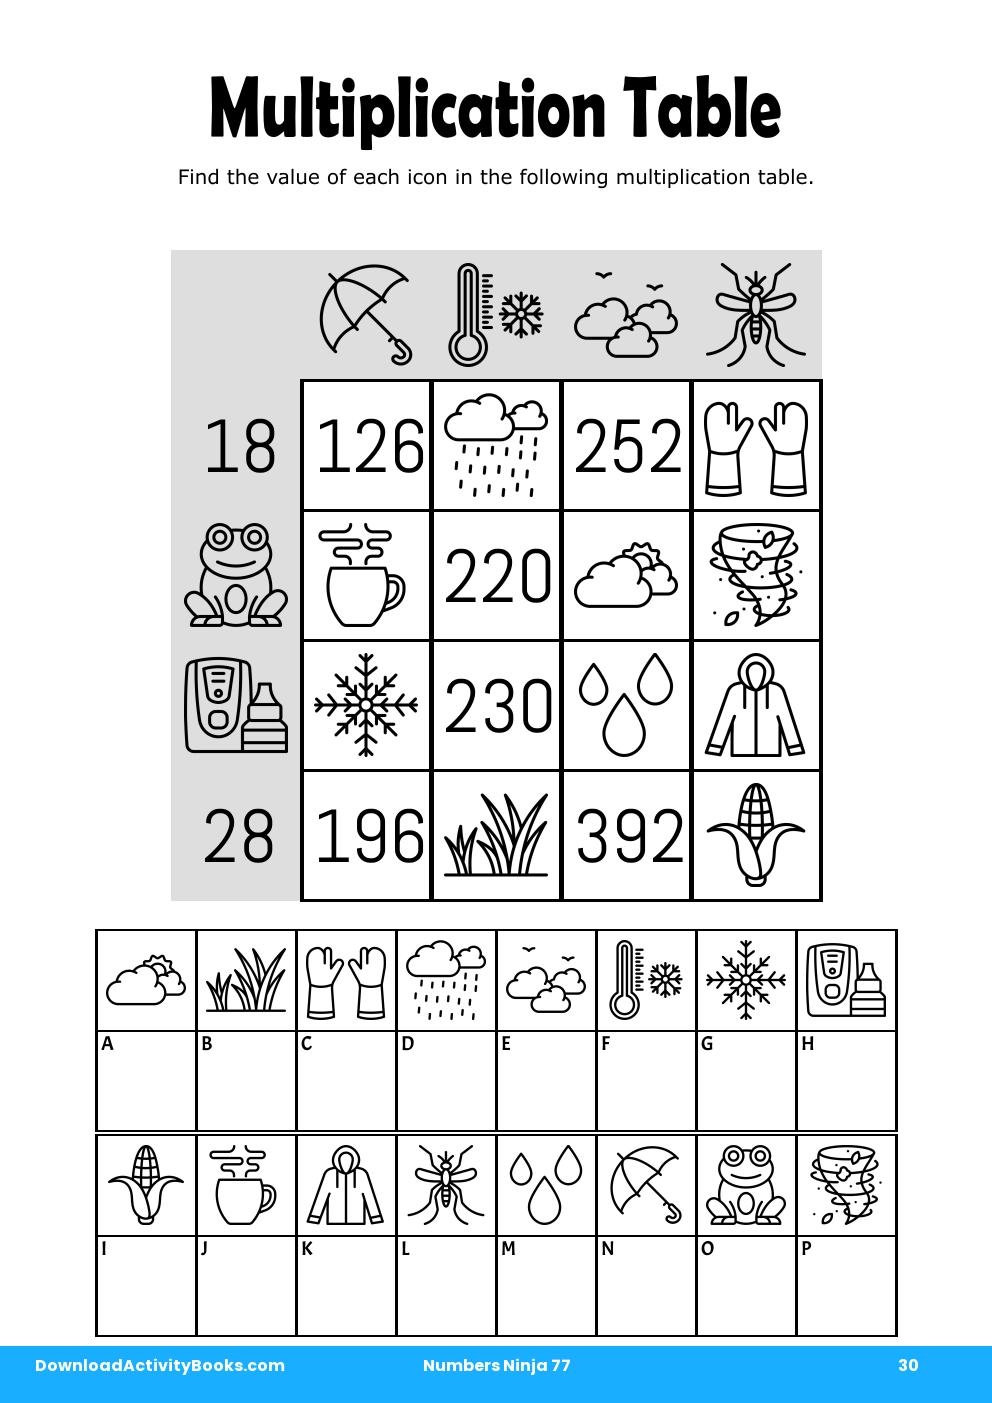 Multiplication Table in Numbers Ninja 77